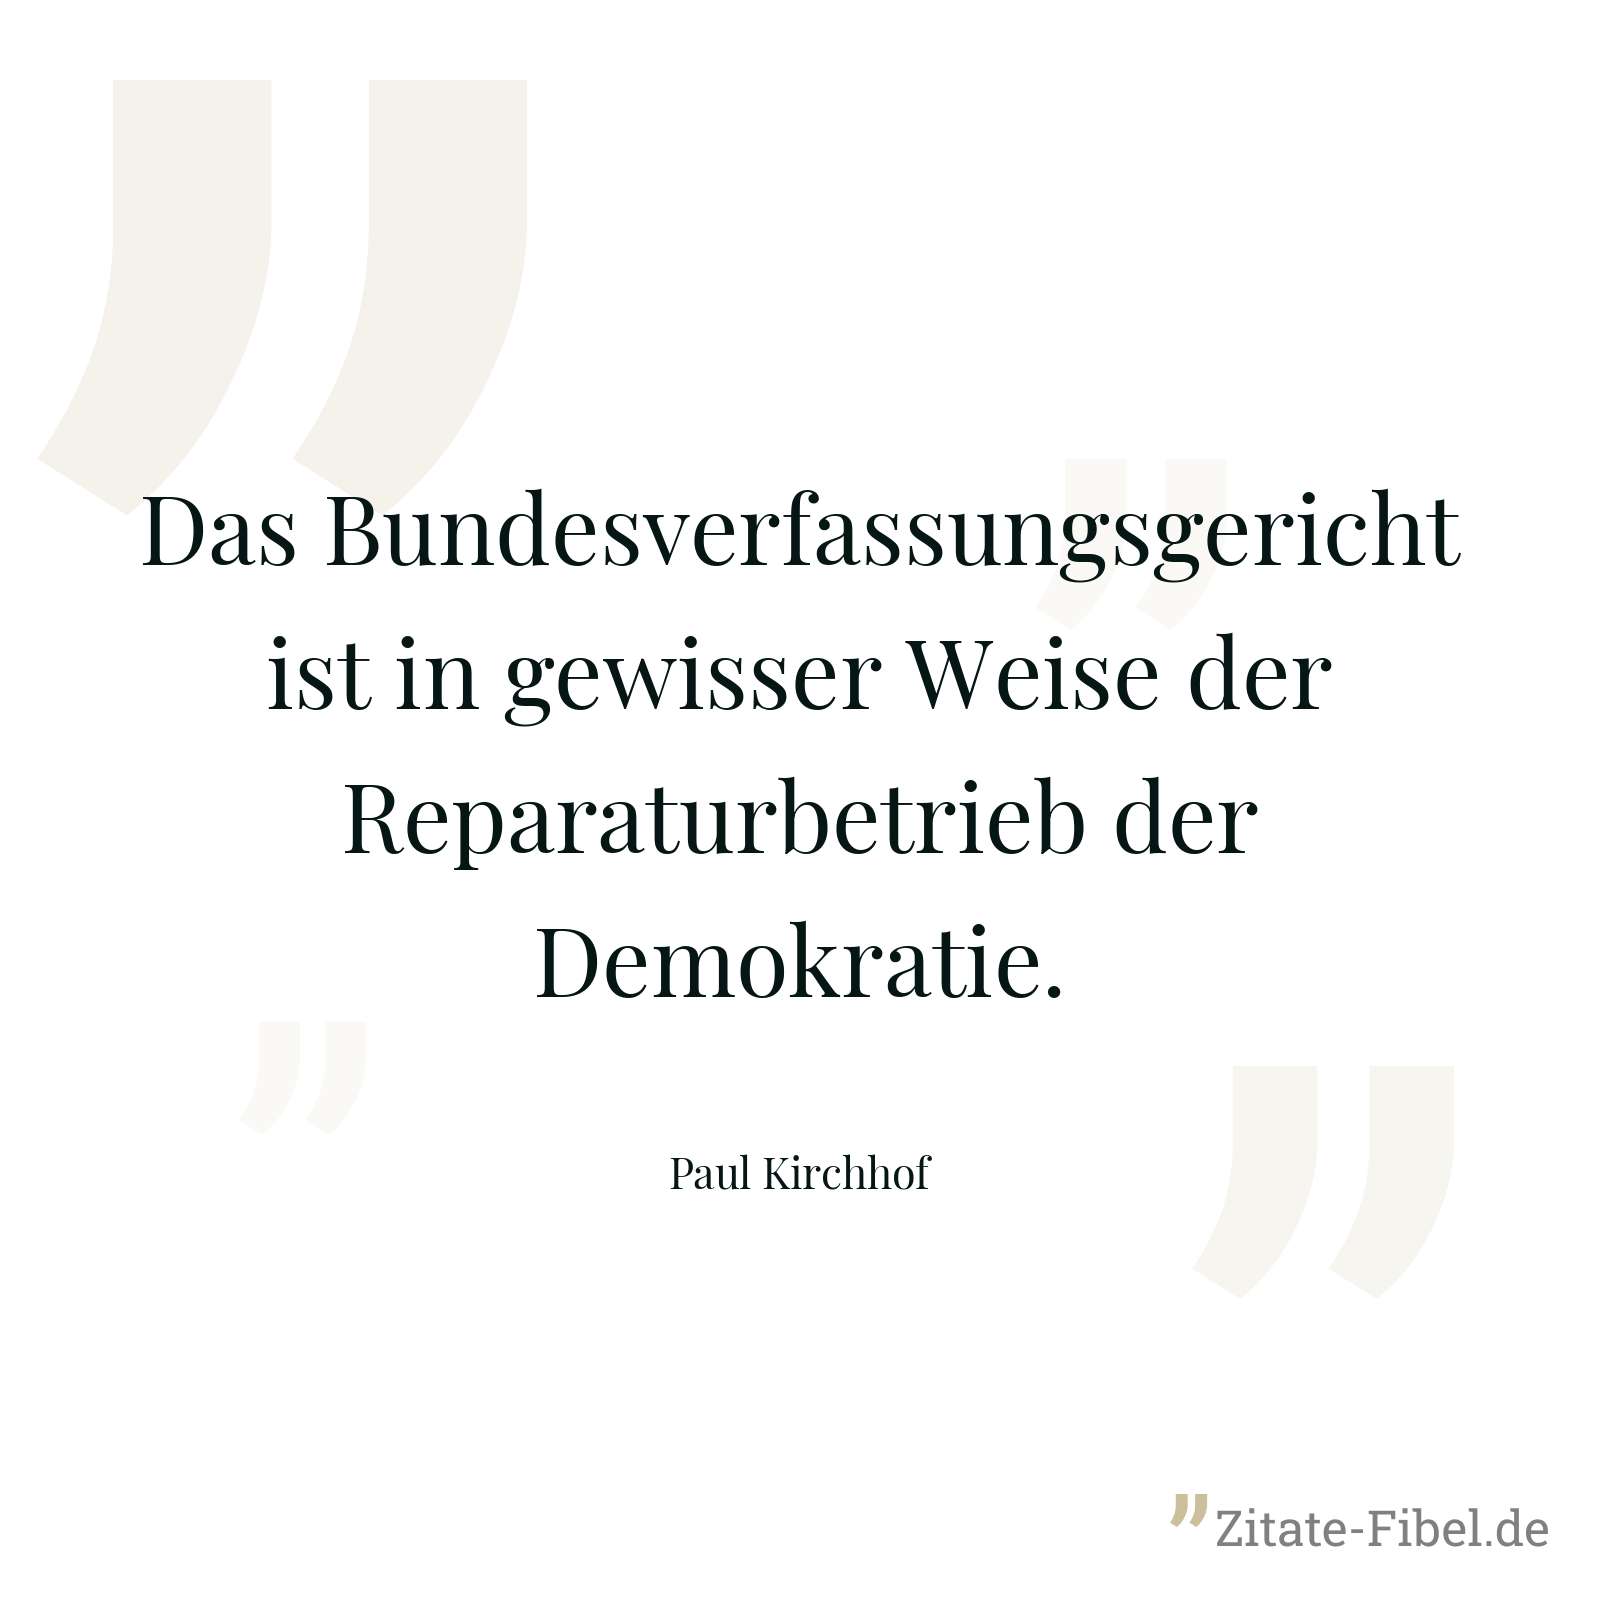 Das Bundesverfassungsgericht ist in gewisser Weise der Reparaturbetrieb der Demokratie. - Paul Kirchhof